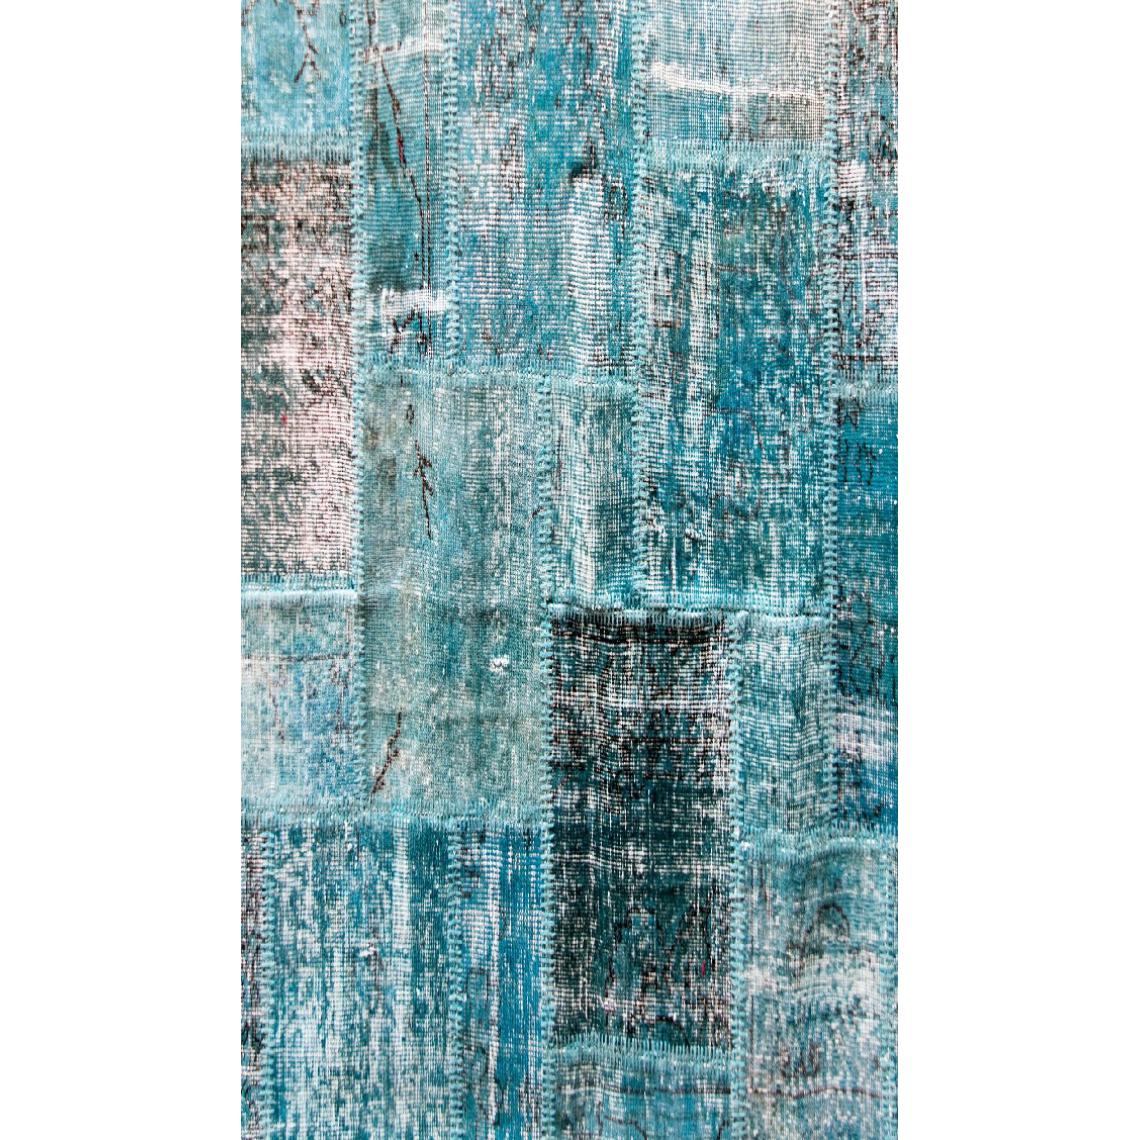 Homemania - HOMEMANIA Tapis Imprimé Blue Lines 1 - Résumé - Décoration de Maison - antidérapants - Pour Salon, séjour, chambre à coucher - Multicolore en Polyester, Coton, 120 x 180 cm - Tapis